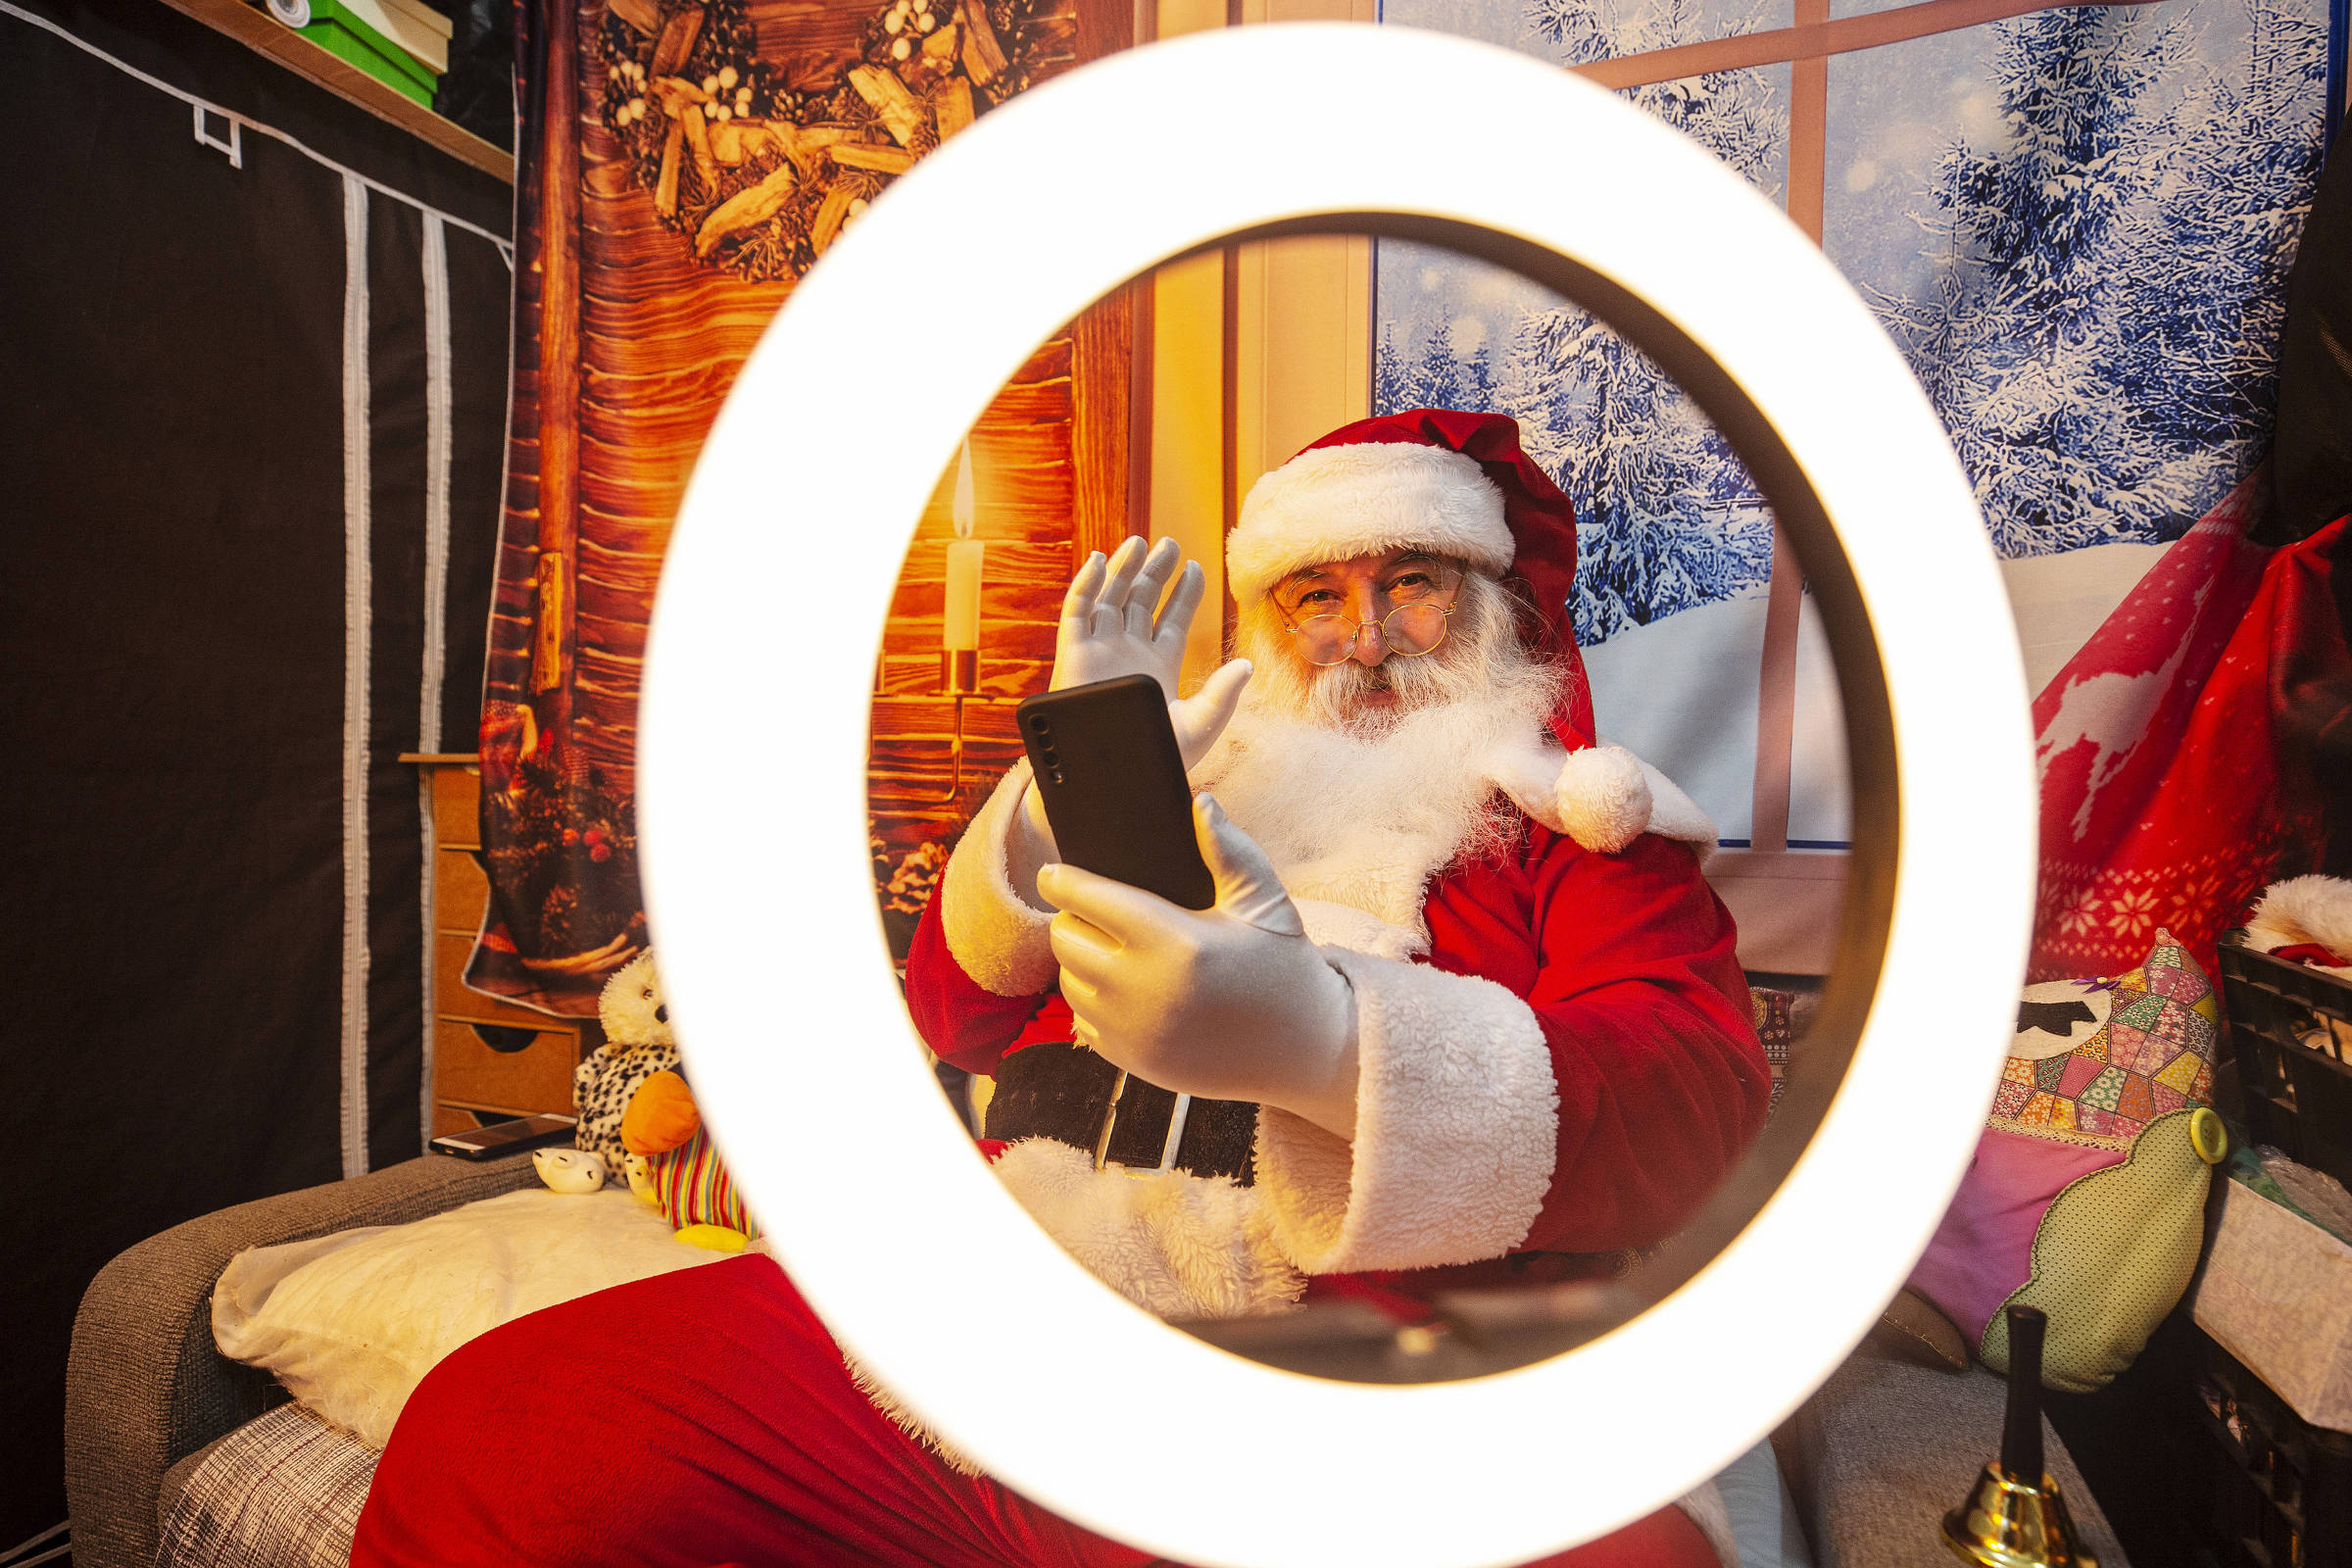 Ho-ho-ho-ho! Papai Noel Tem Uma Mensagem Especial Para Você